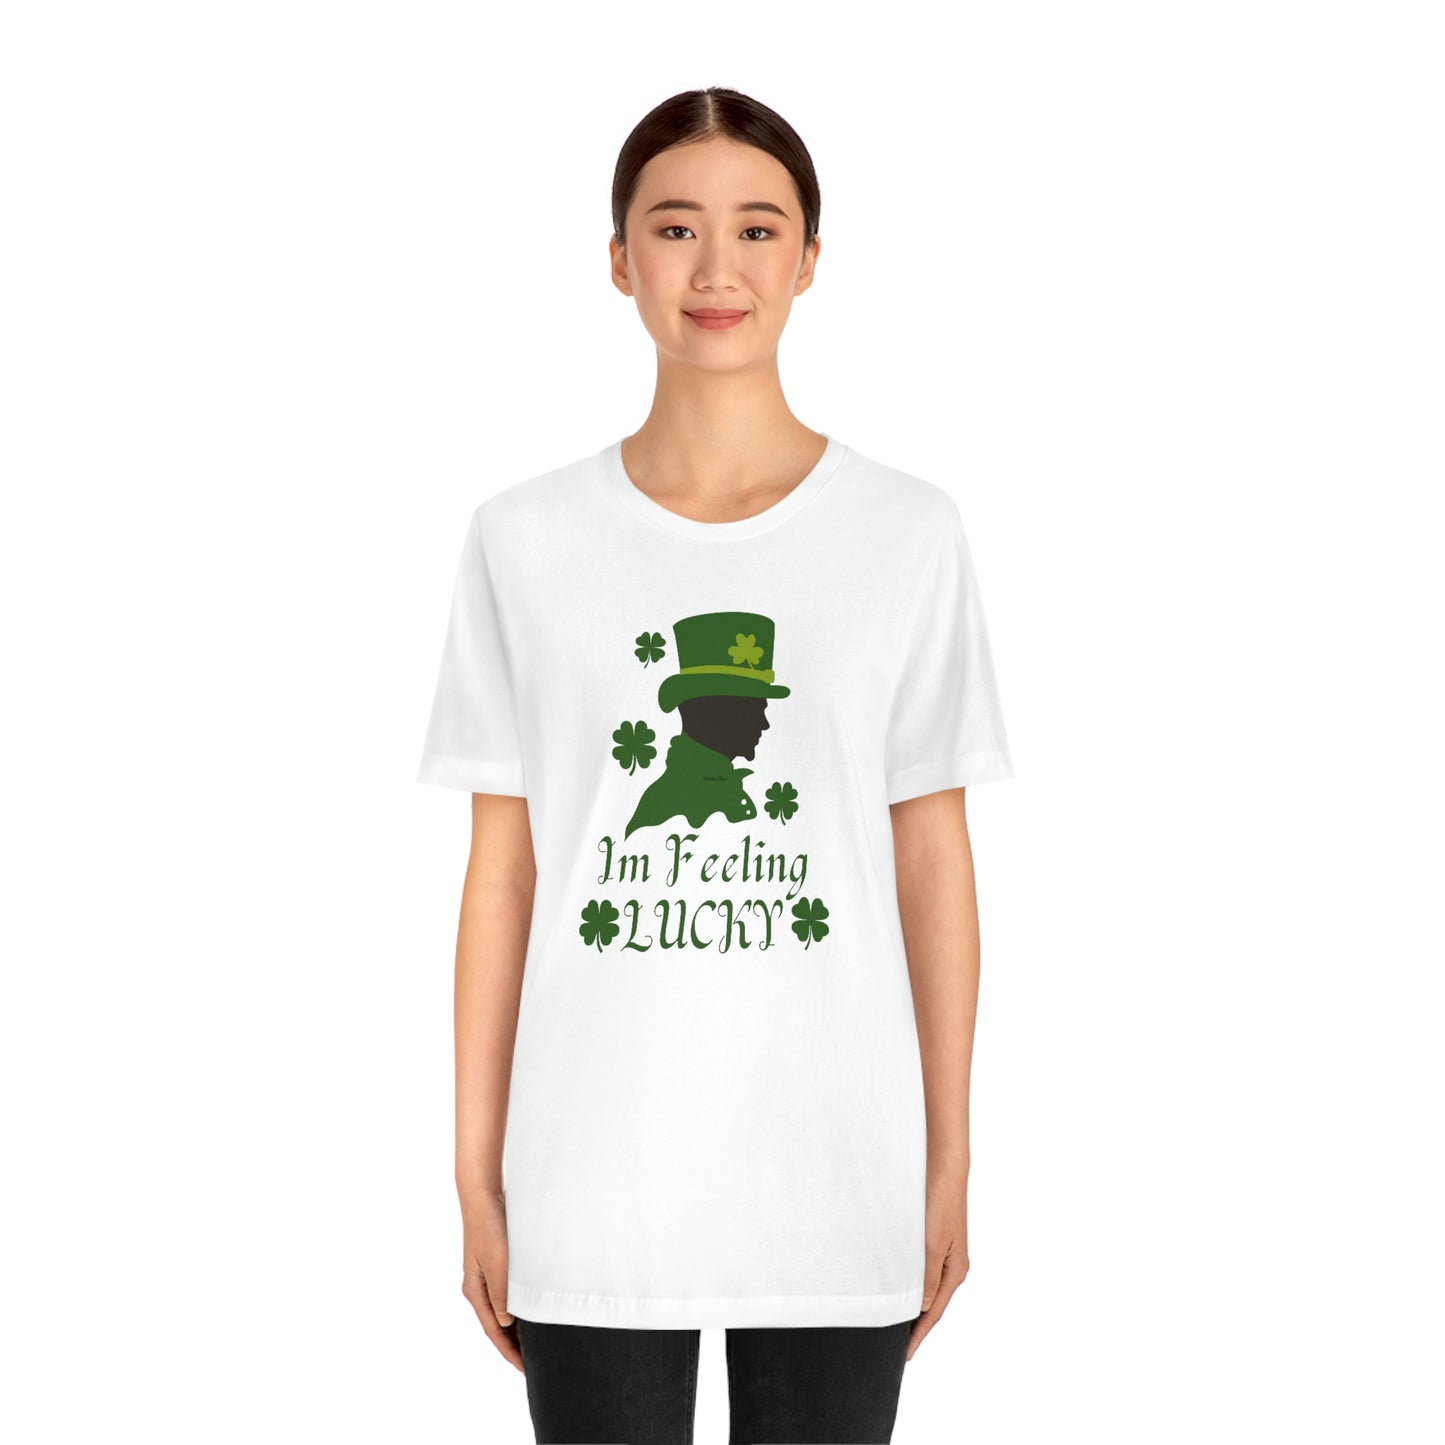 I'm Feeling Lucky St Patricks T-Shirt Company | EDGY T-Shirt| Funny St Patricks Day Irish unisex Jersey Short Sleeve Tee